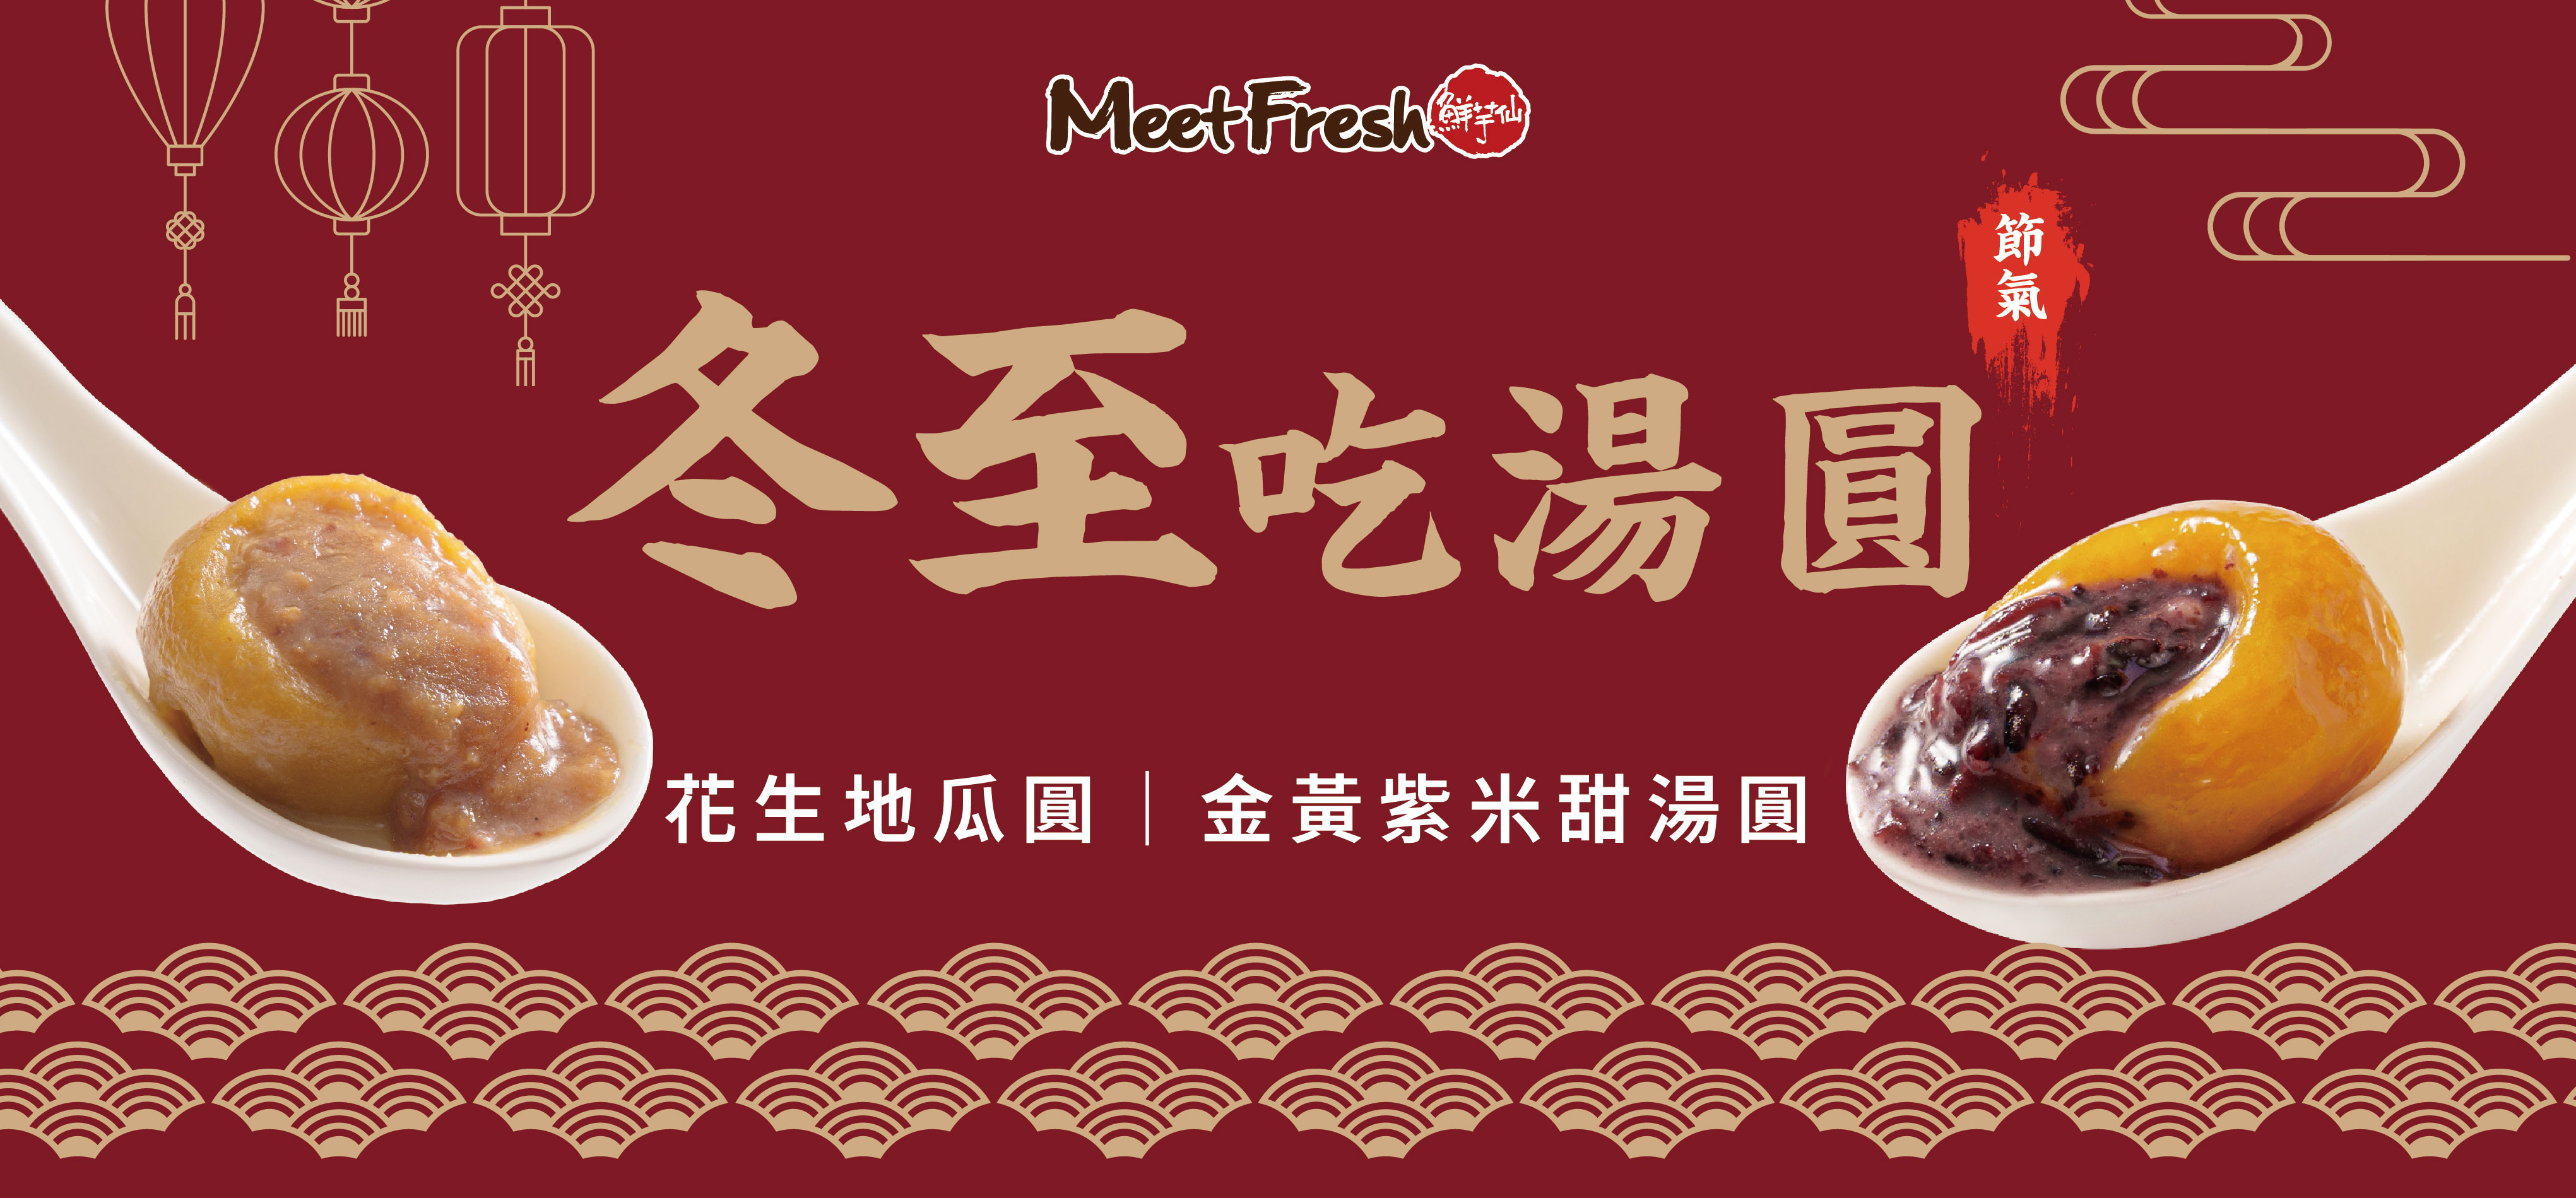 金黃紫米甜湯圓(200g/盒)產品圖